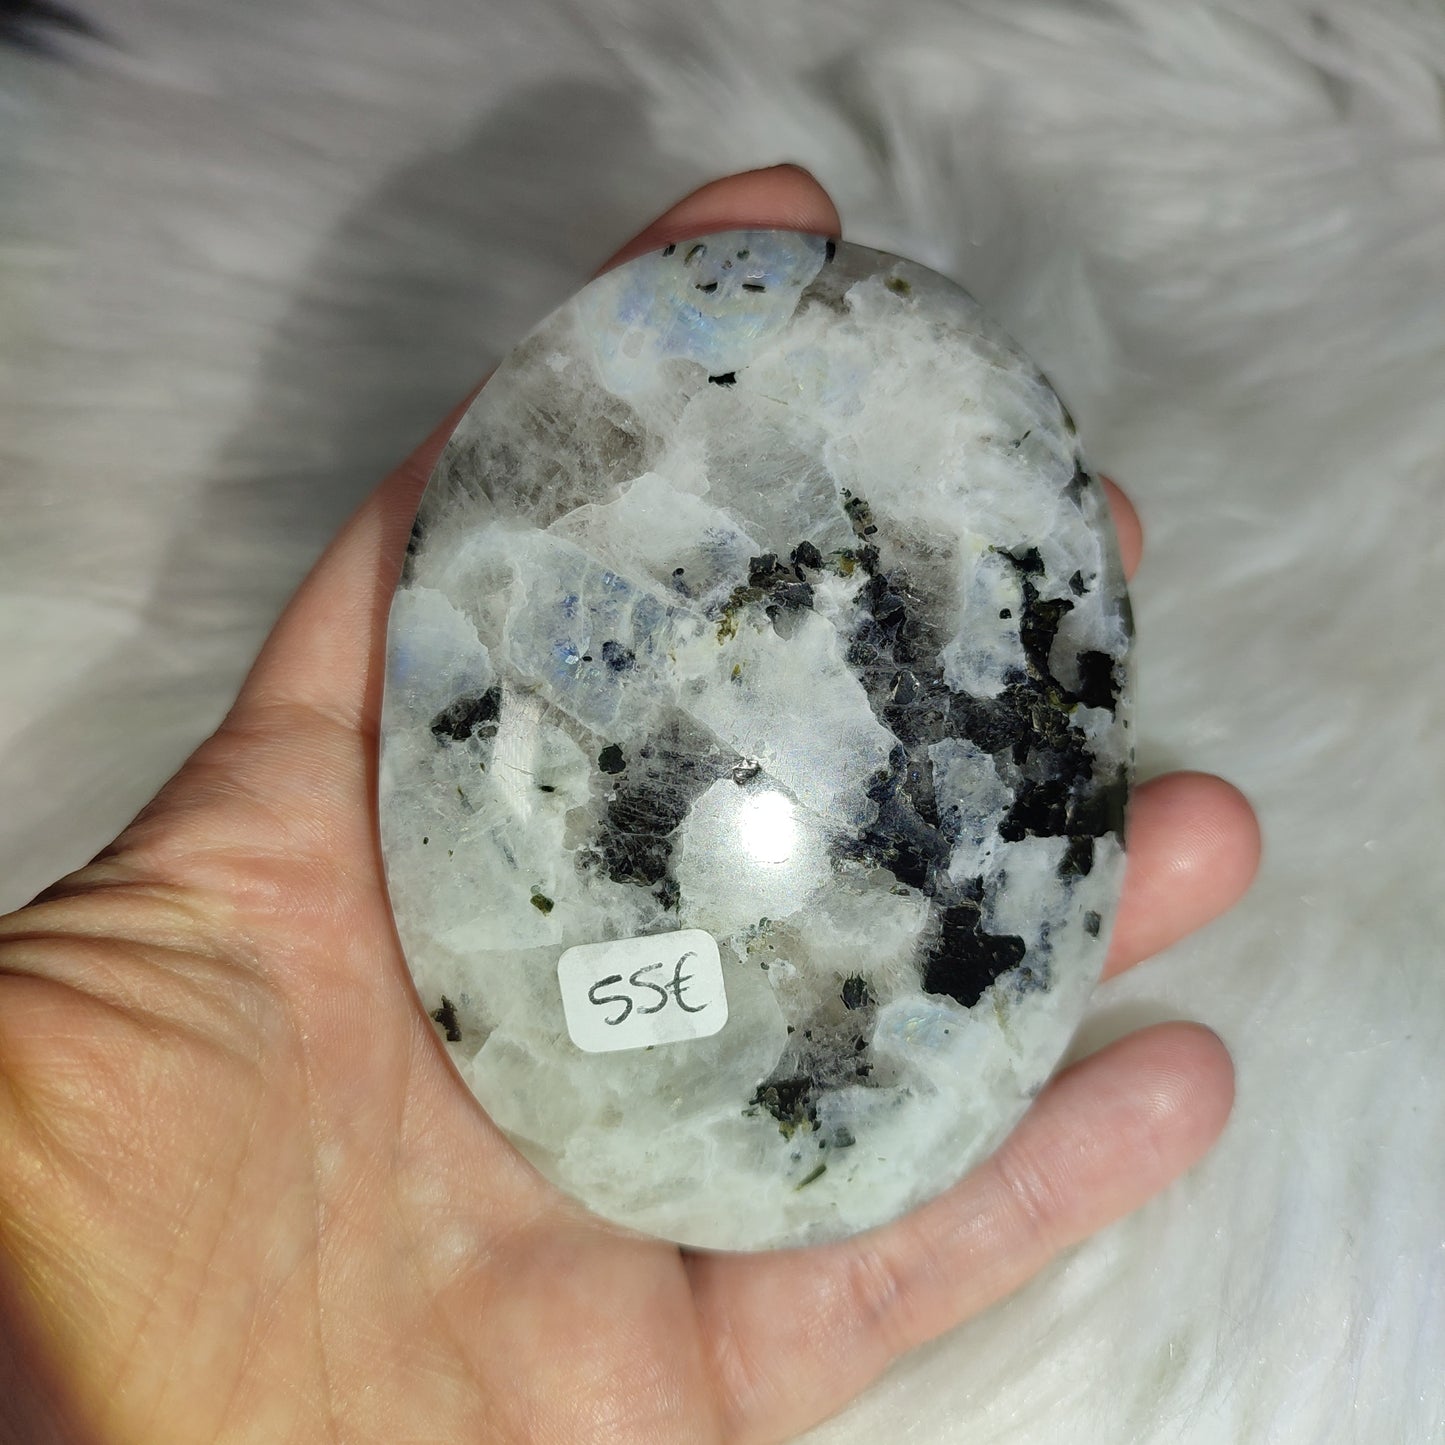 Gran Rodado piedra luna con biotita 251 gramos